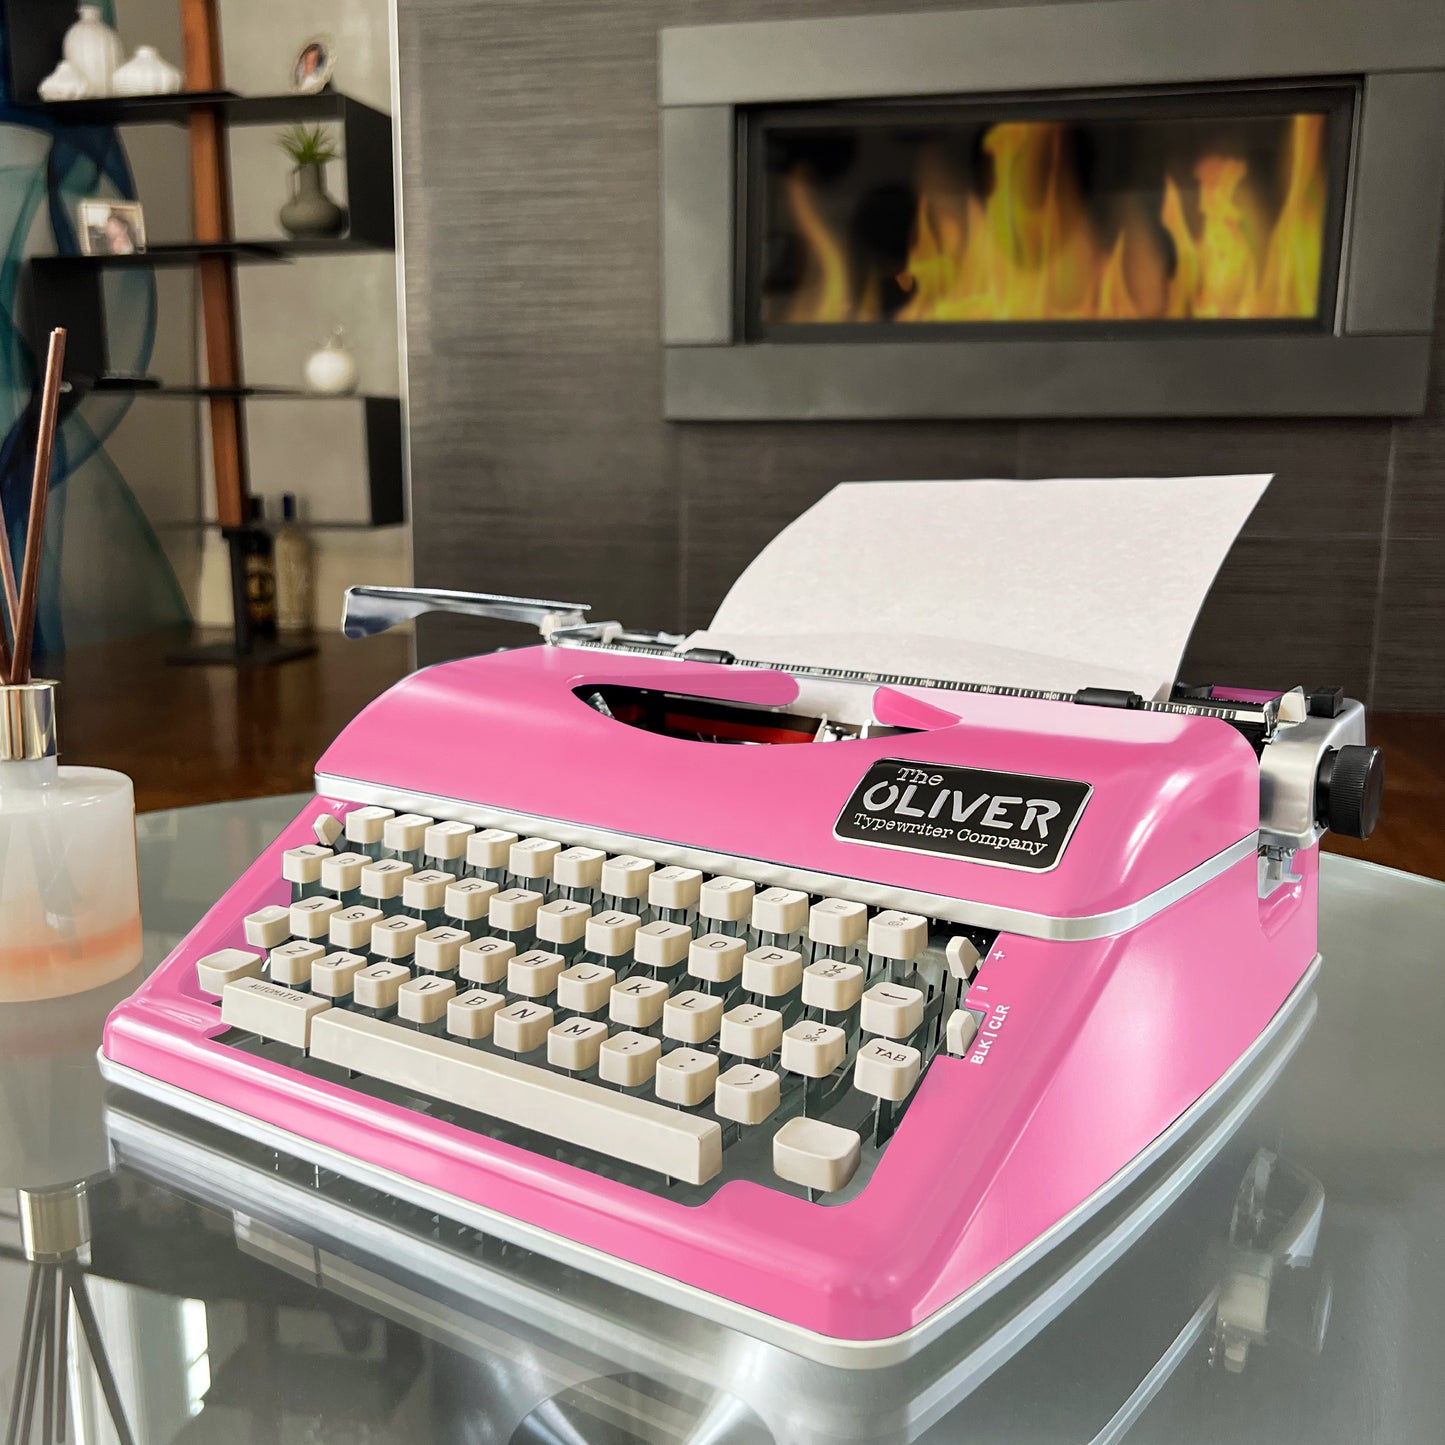 The Oliver Typewriter Company Timeless Manual Typewriter, Pink